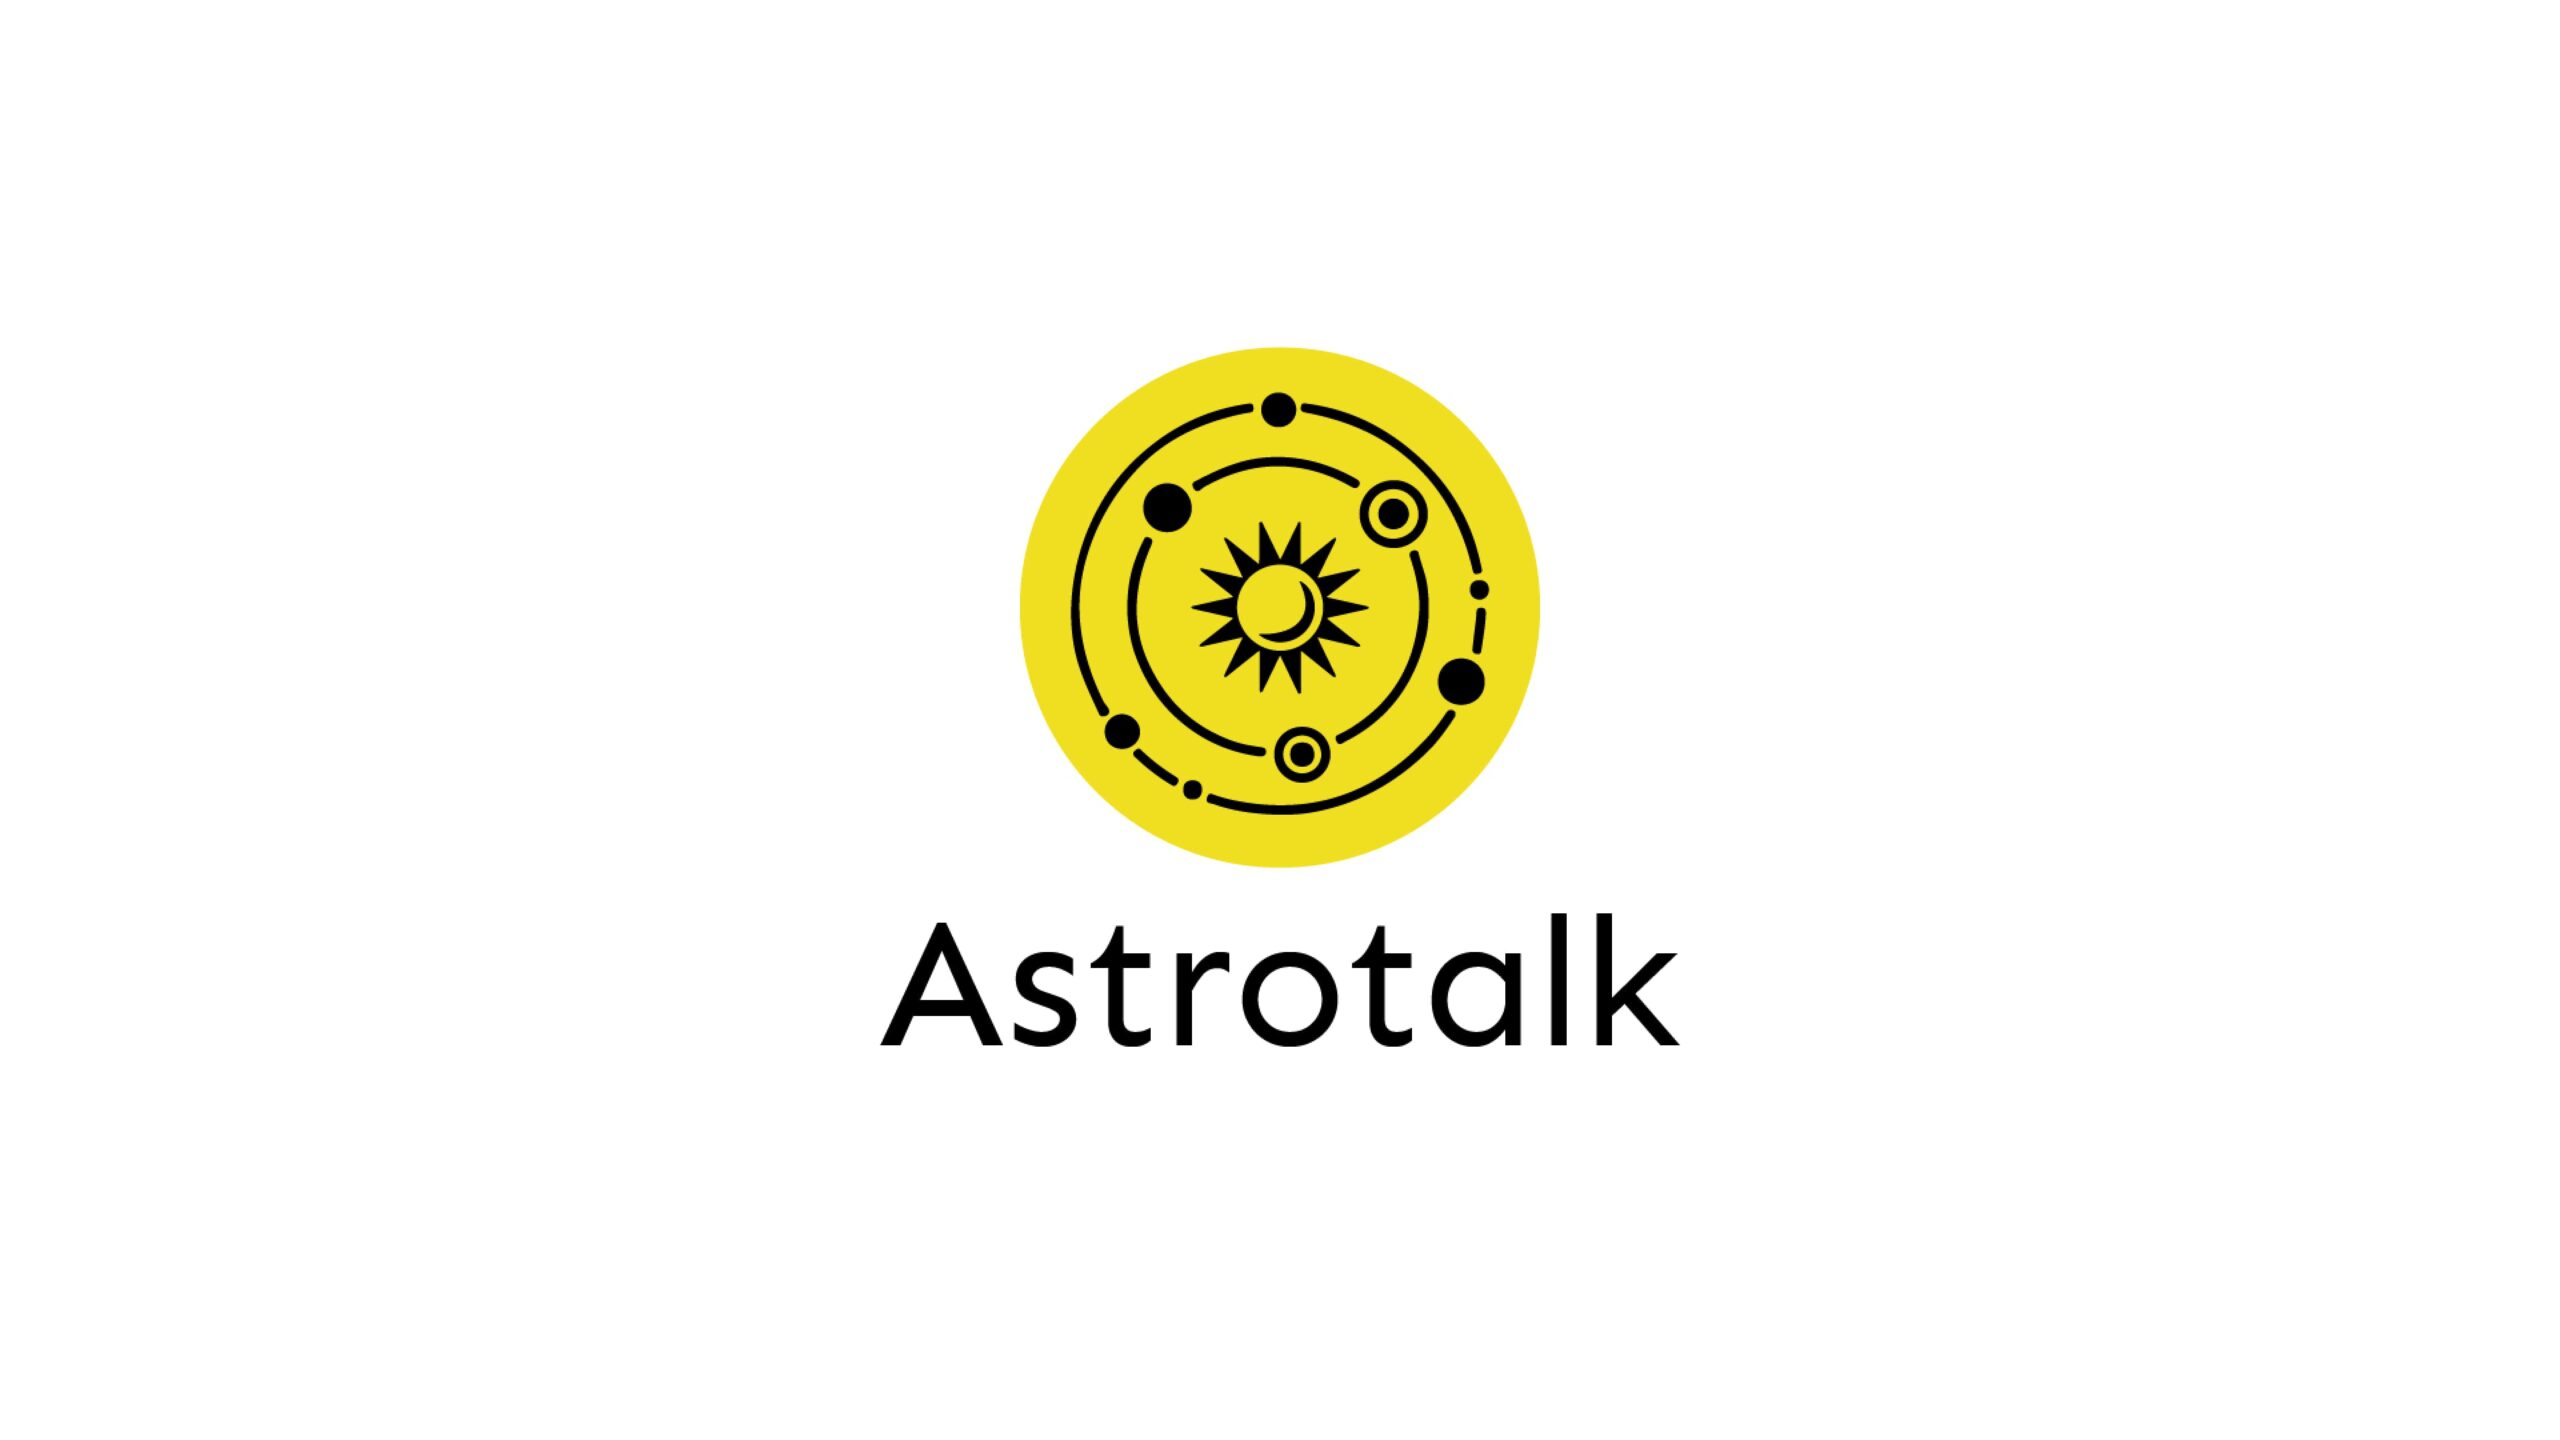 Astrotalk、国際的な事業拡大のためにシリーズAで2,000万ドルの資金を獲得